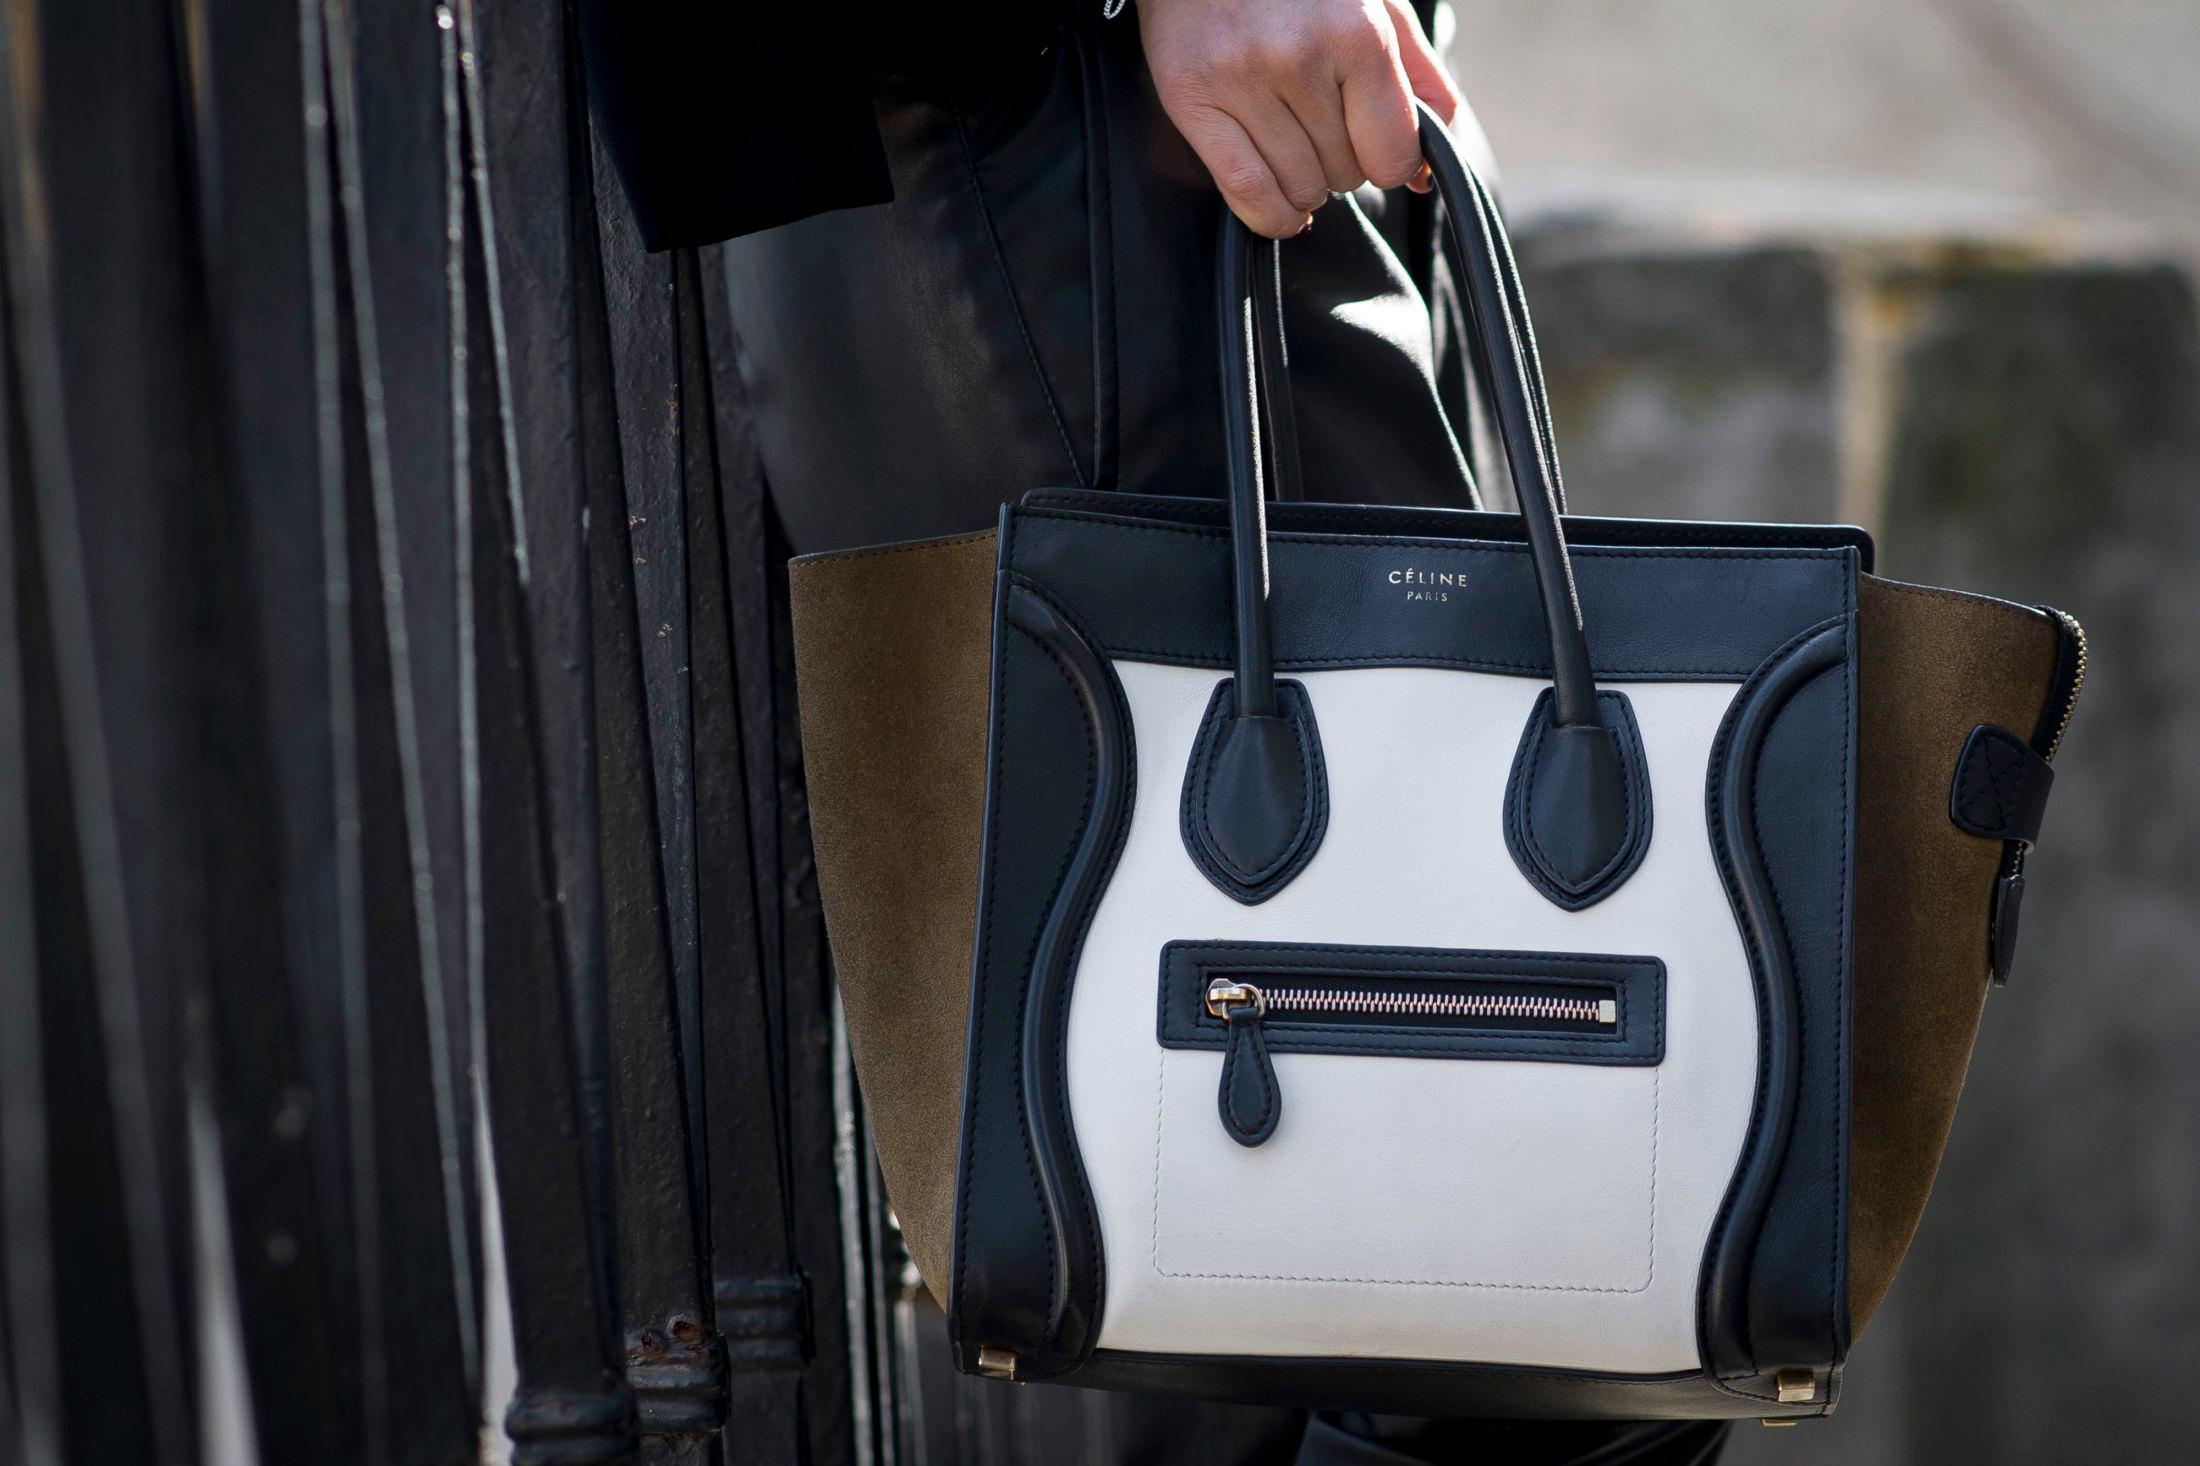 IKONISK: Denne vesken fra Céline er kanskje den mest kjente. Foto: Timur Emek/Getty Images